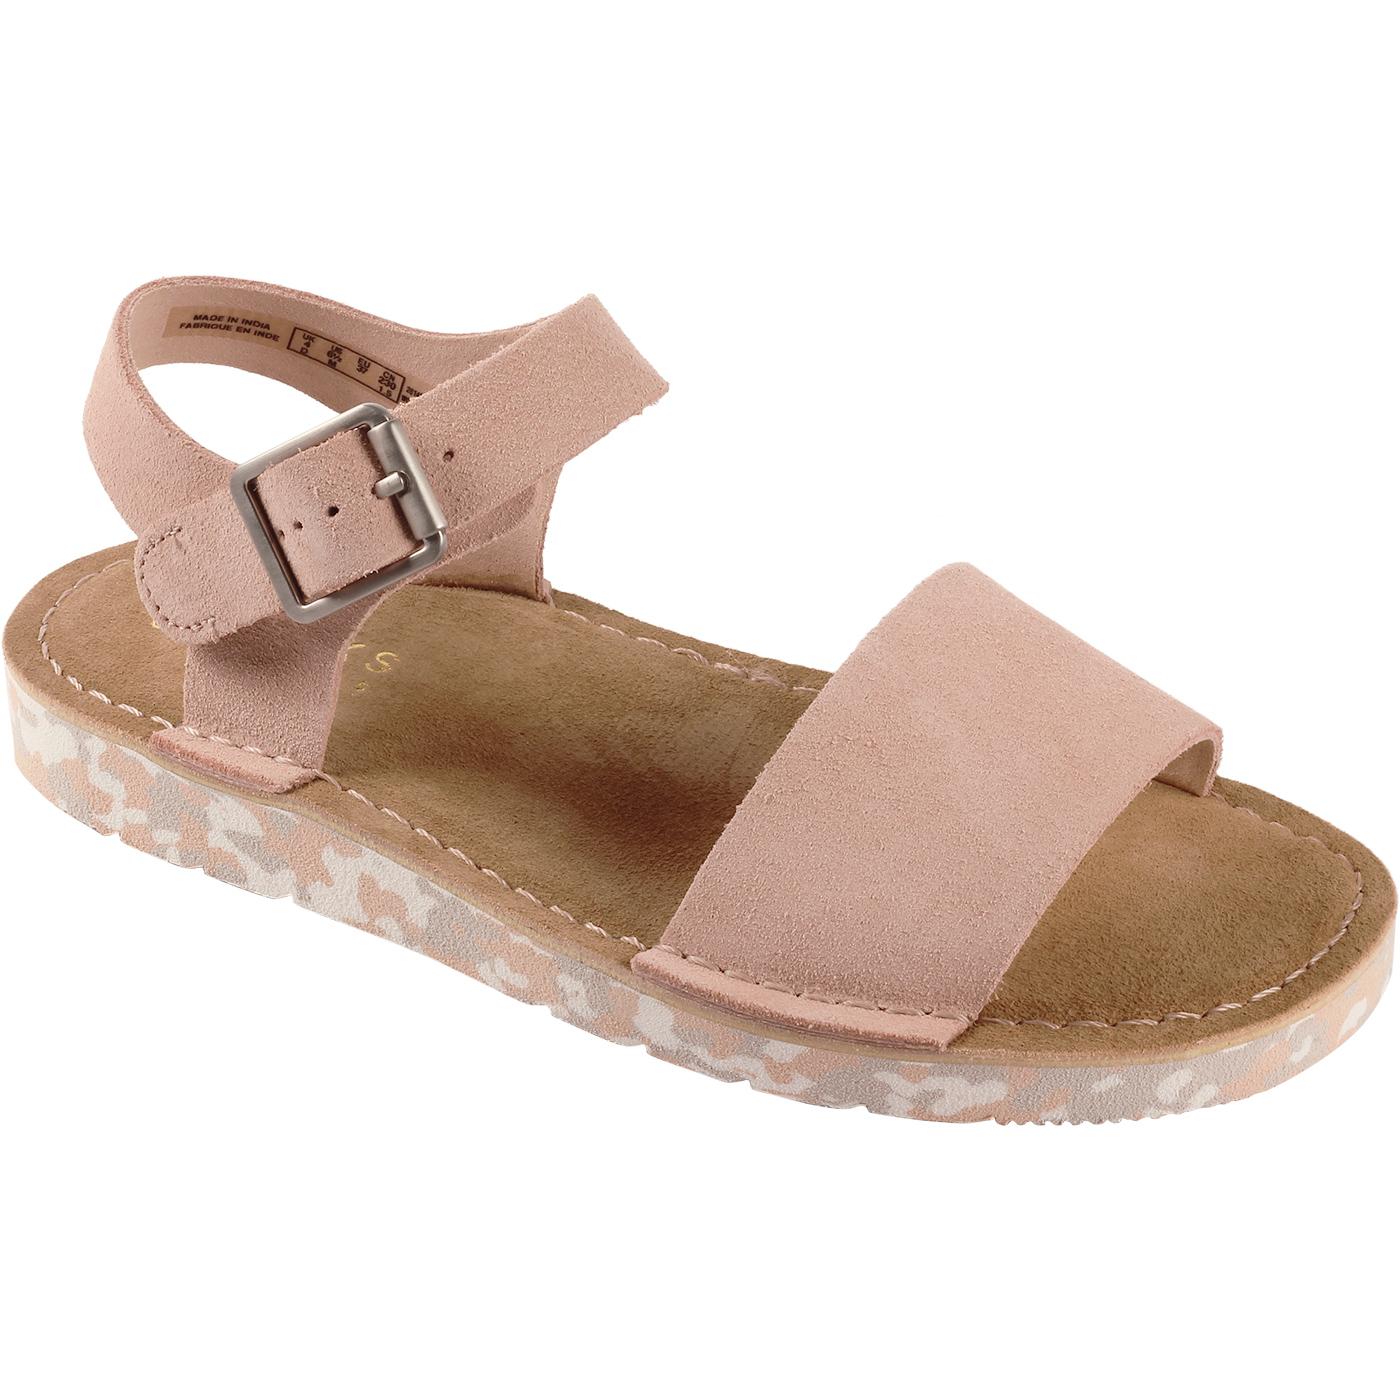 Lunan Strap CLARKS ORIGINALS Suede Sandals (Pink)